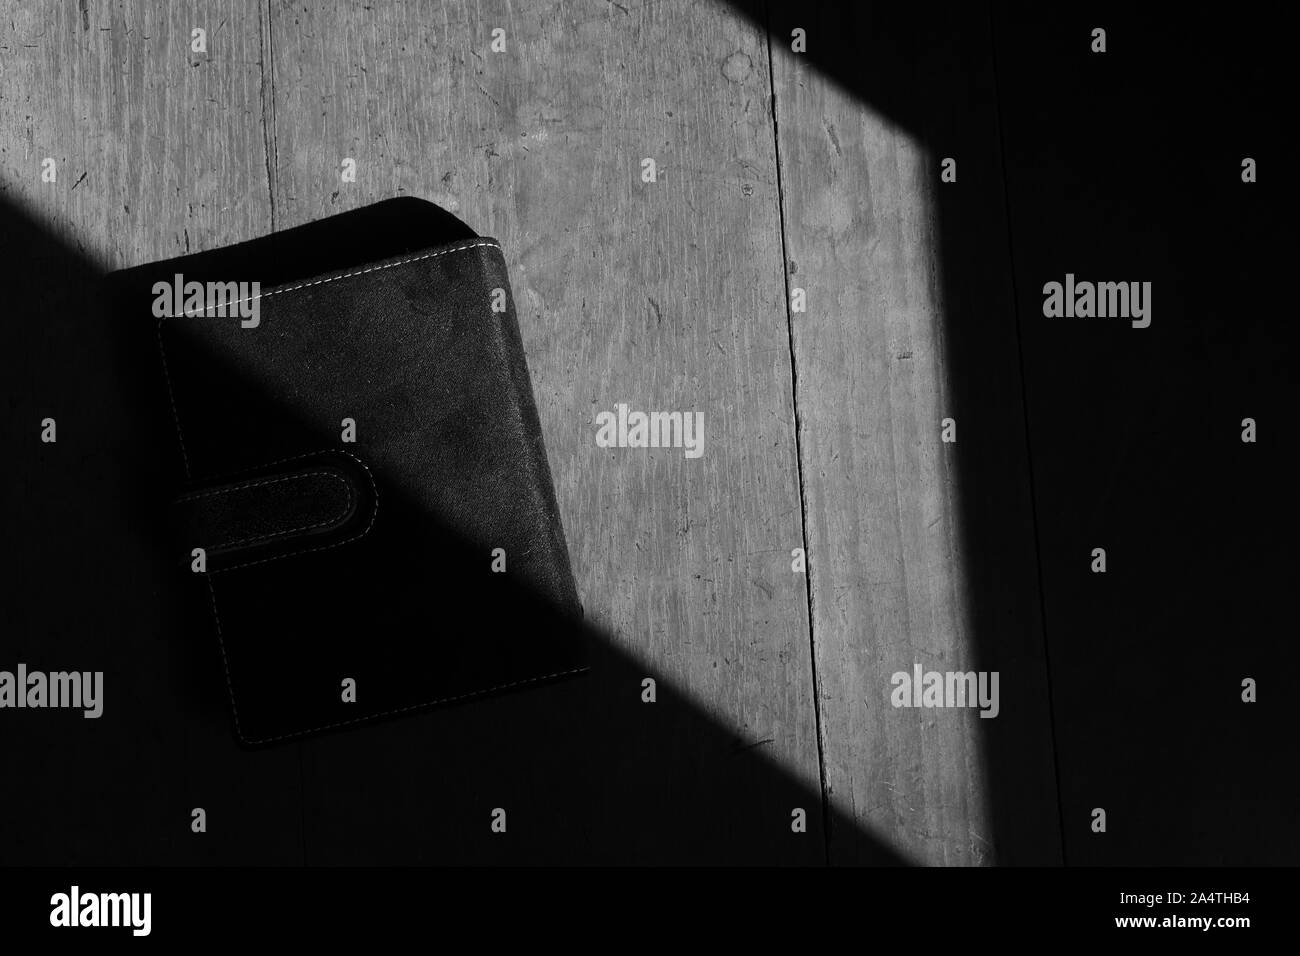 Un livre noir placé sur la surface en bois sous la lumière du soleil, image en noir et blanc Banque D'Images